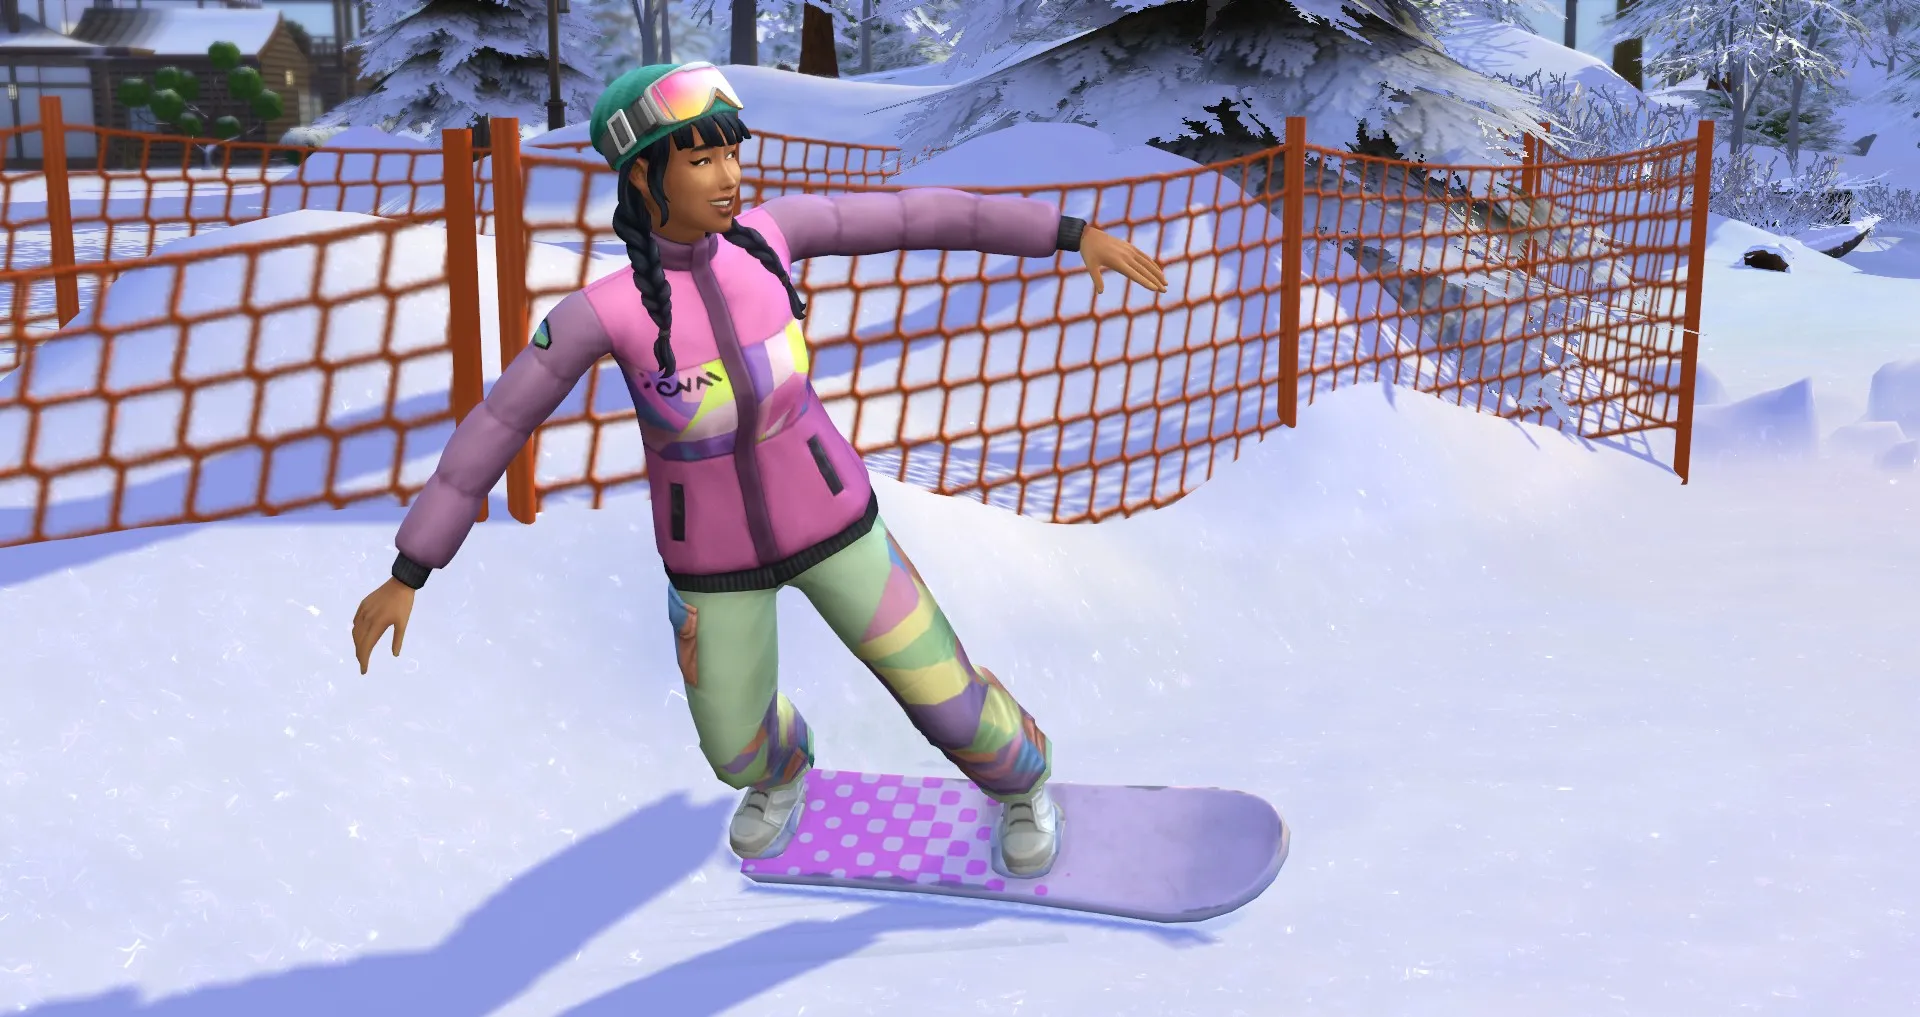 The Sims 4 Snowy Escape에서 스노우보드 실력을 가진 여성 Sim이 스노우보드를 타고 있습니다.